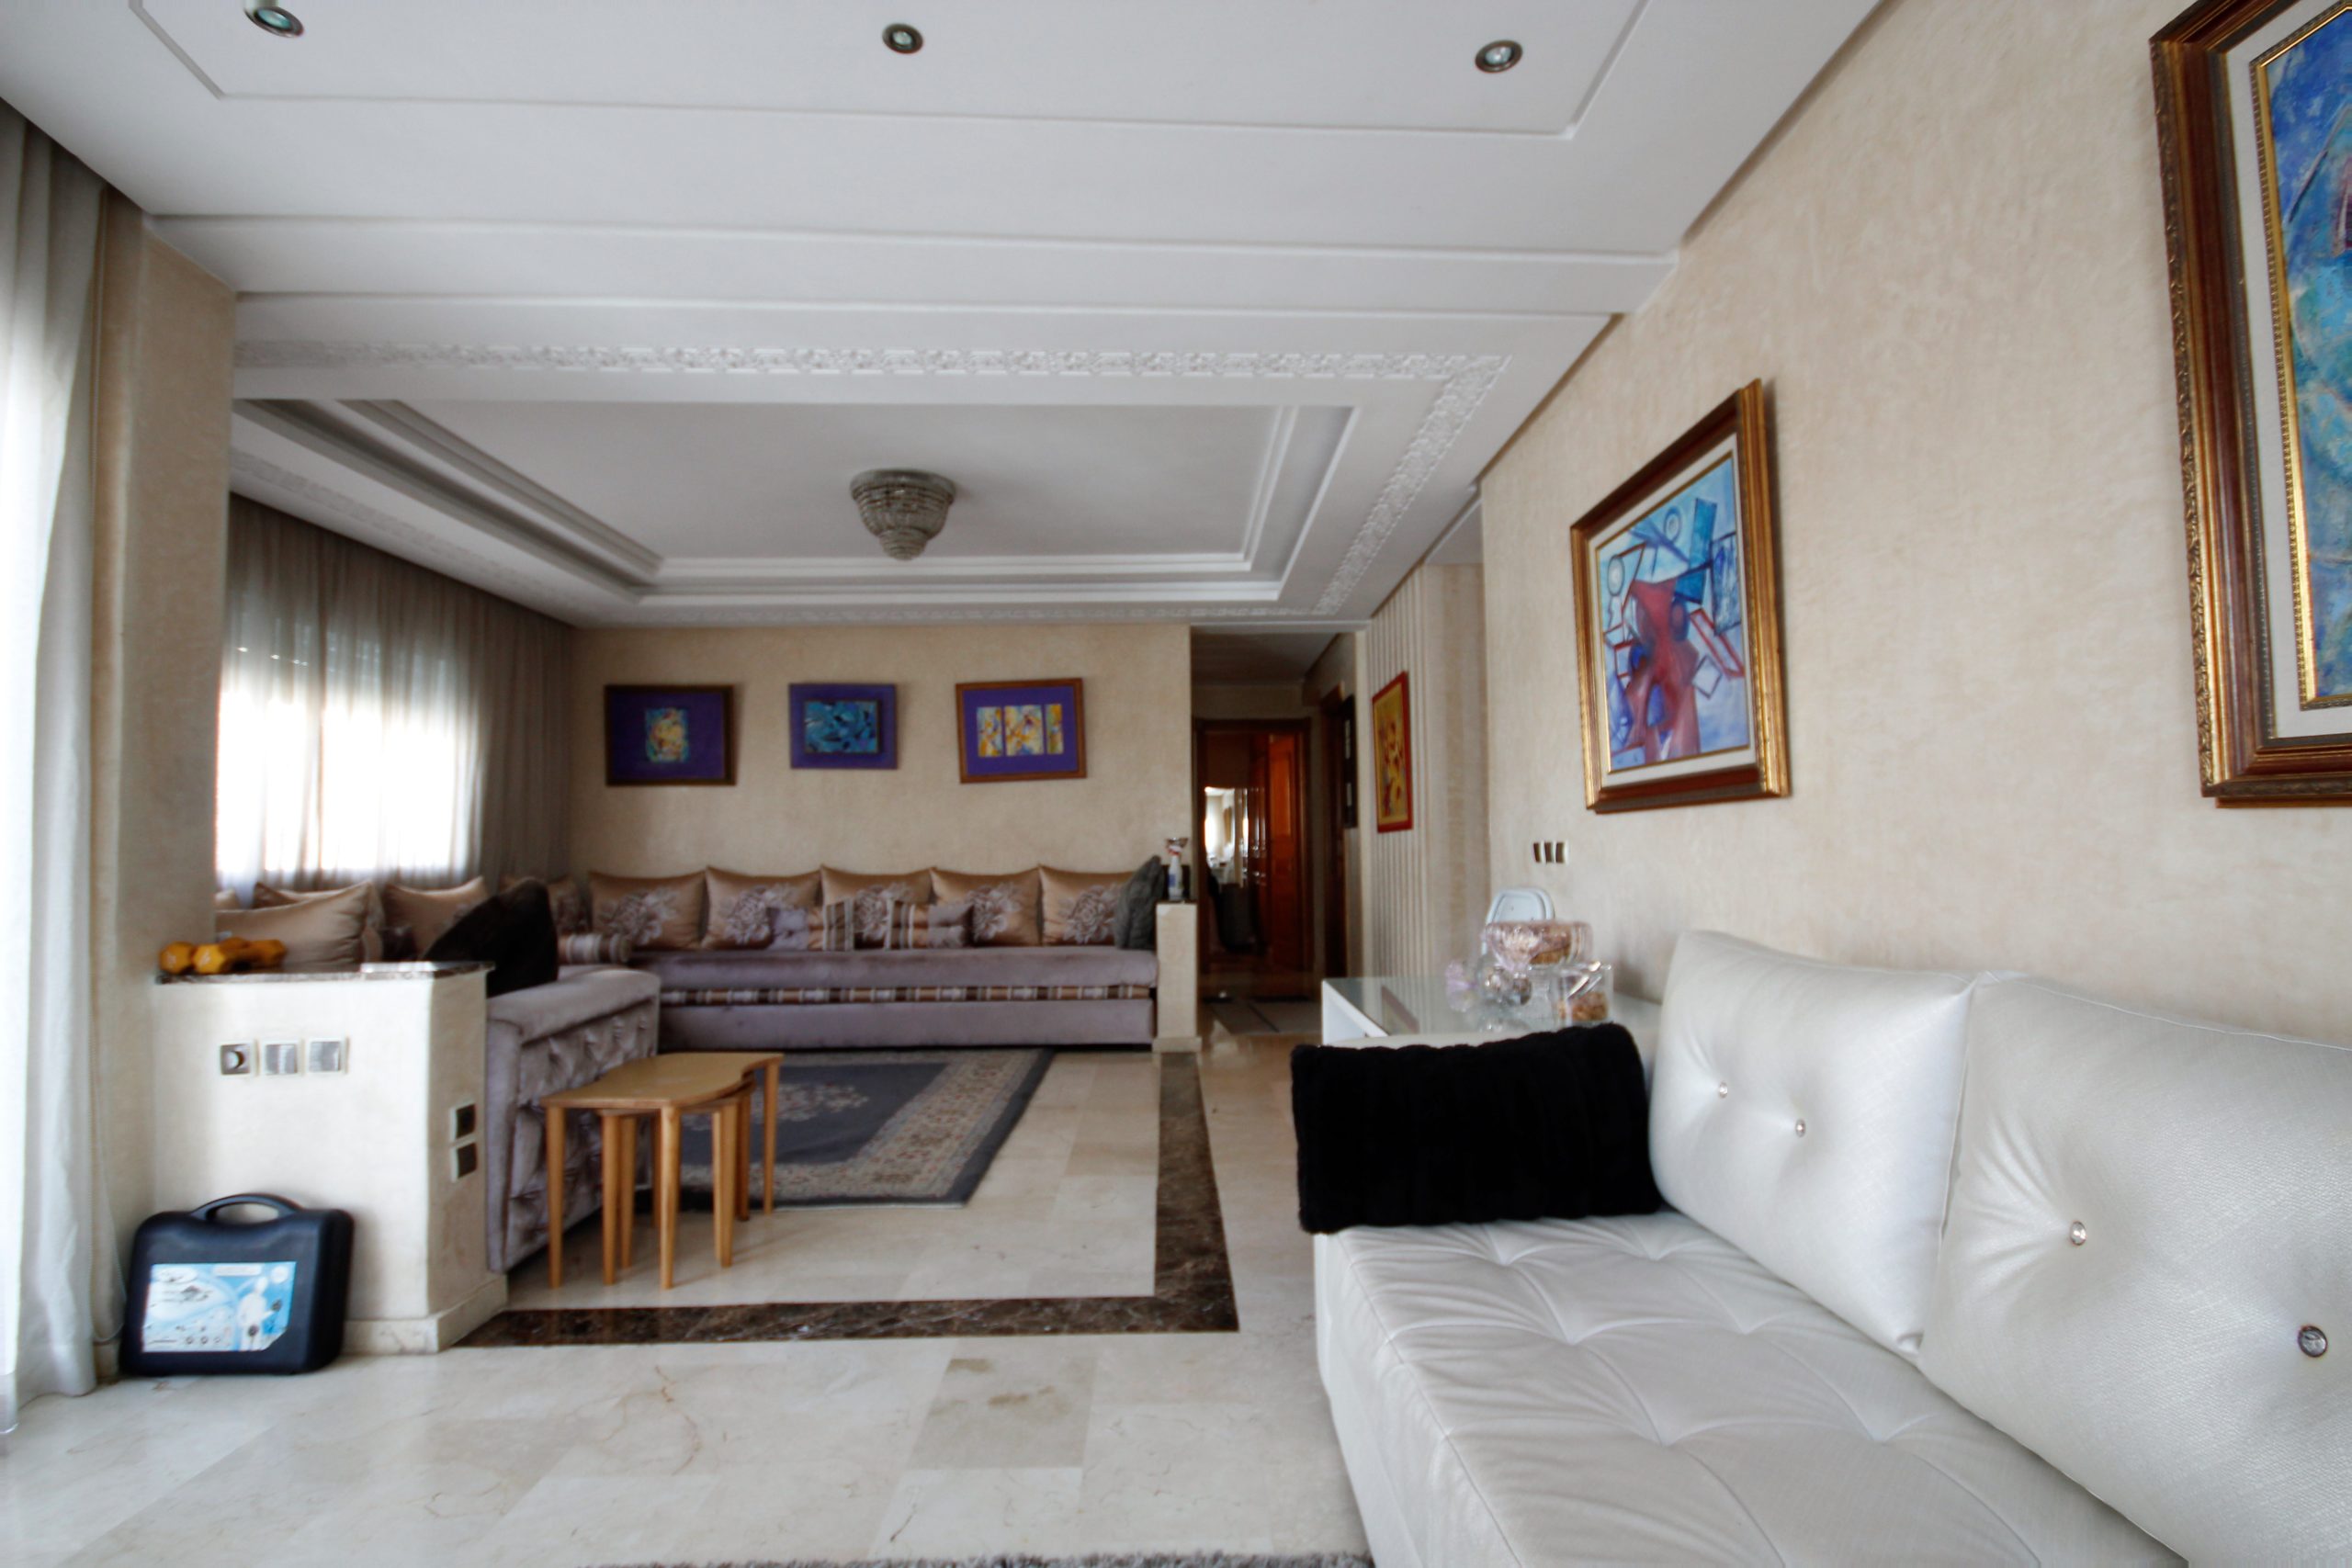 Maroc, Casablanca, Maarif, à acheter appartement récent de 99 m² bon prix